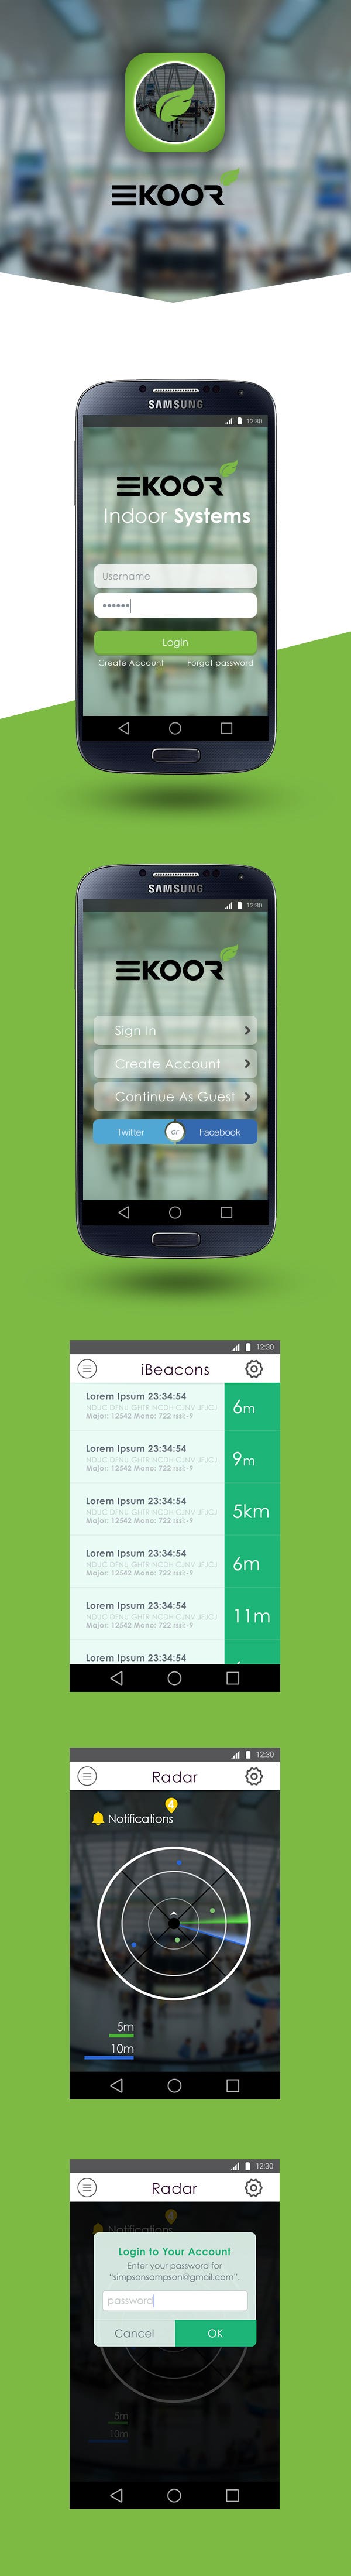 Design Koor Mobile Application